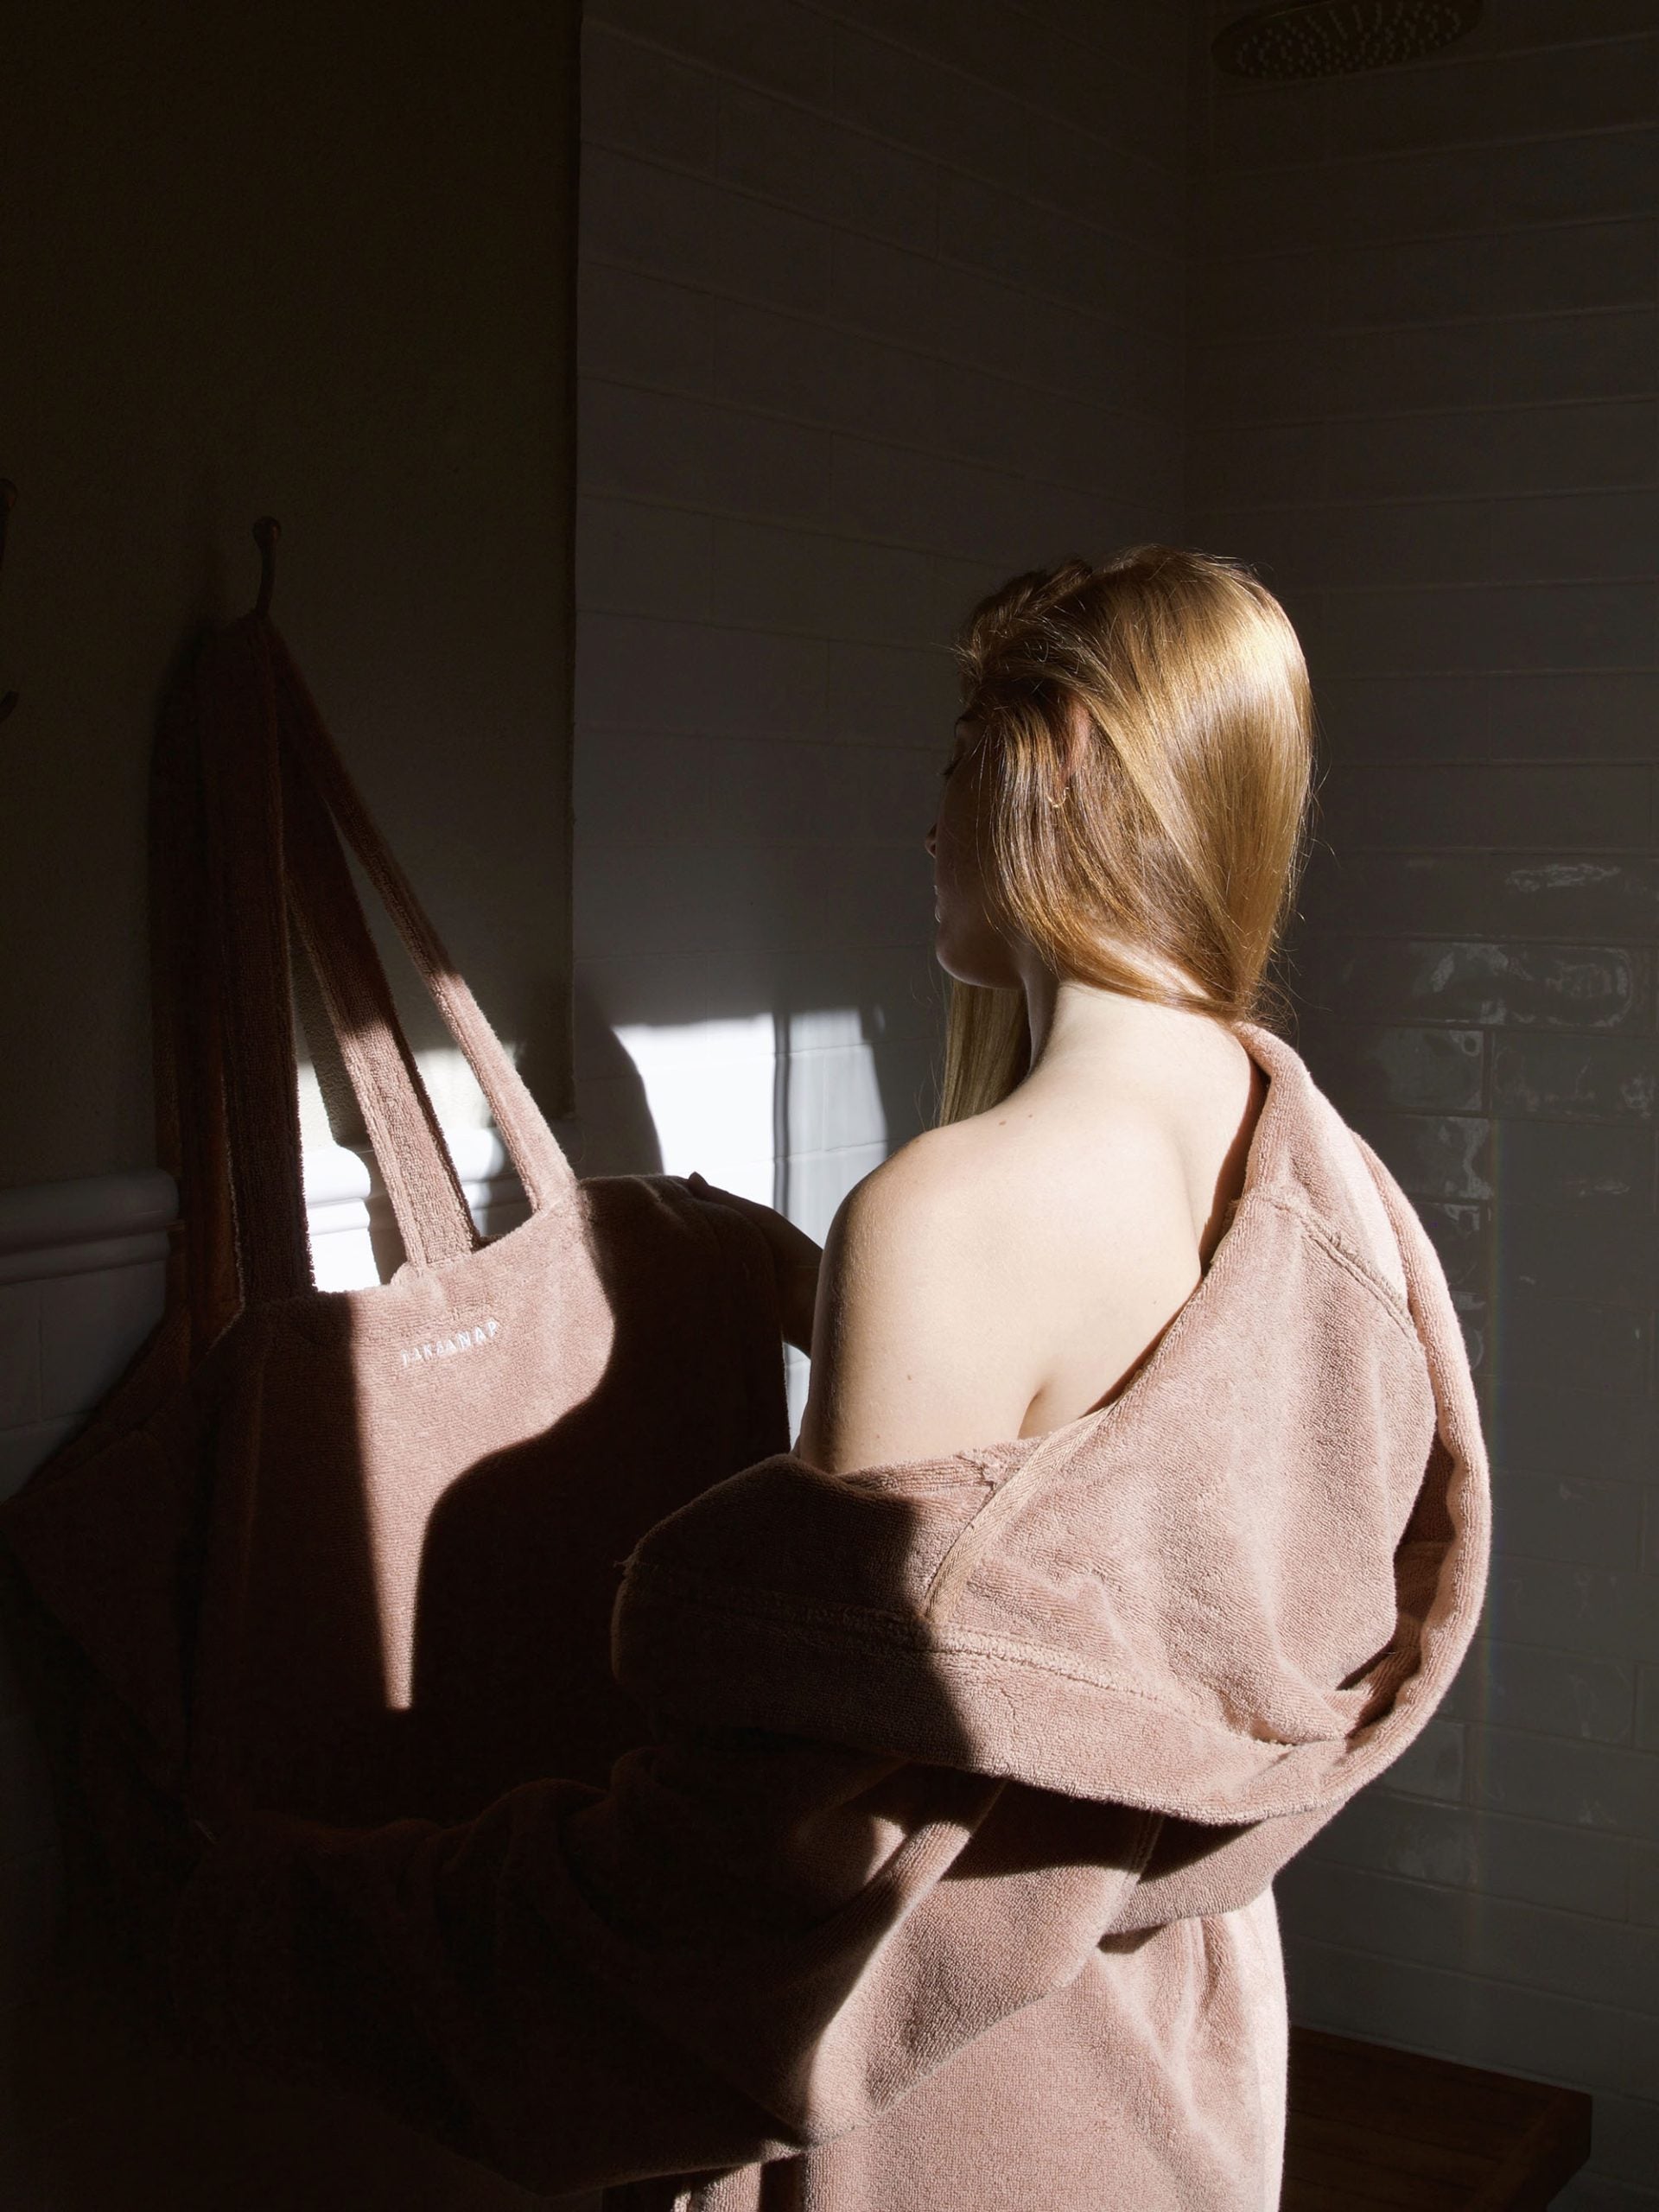 אישה שלובשת חלוק רחצה בצבע לאטה מסתכלת ונוגעת בתיק יםבתיק ים שתלוי על הקיר